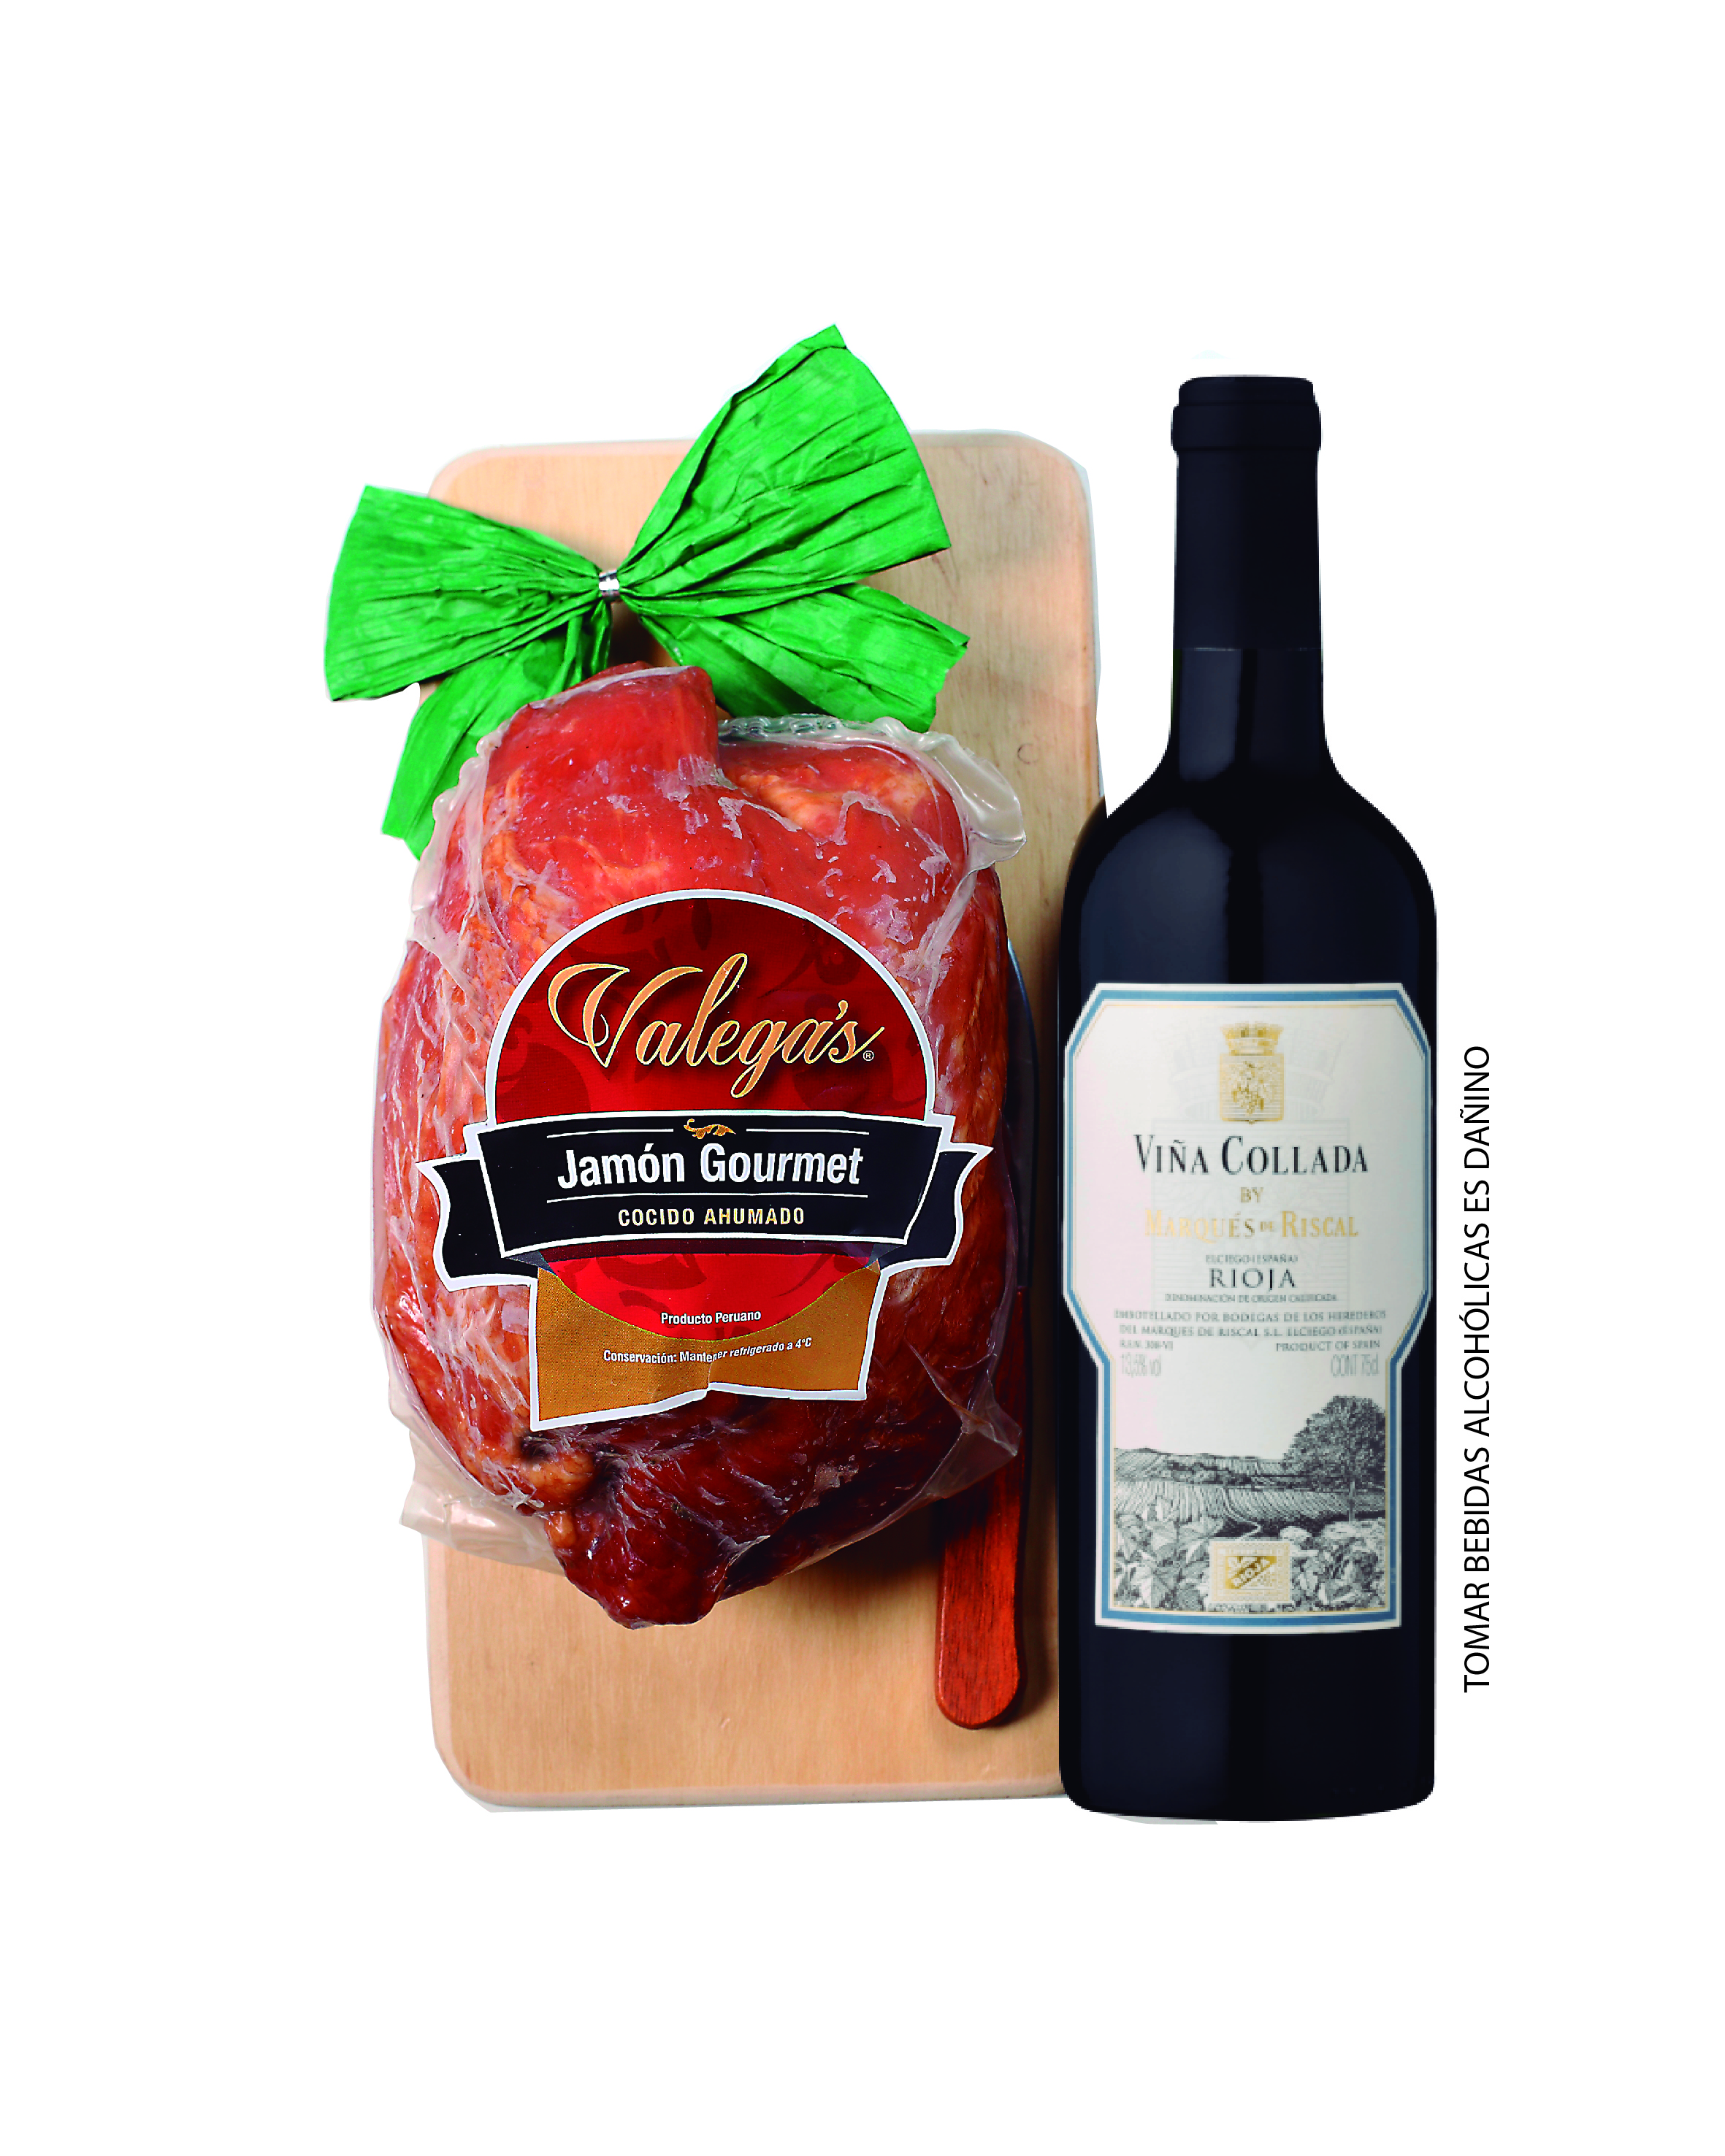 Jamón Gourmet de 1.2kg con tablita de madera y cuchillo, acompañado por un vino Rioja de Marqués del Riscal.
